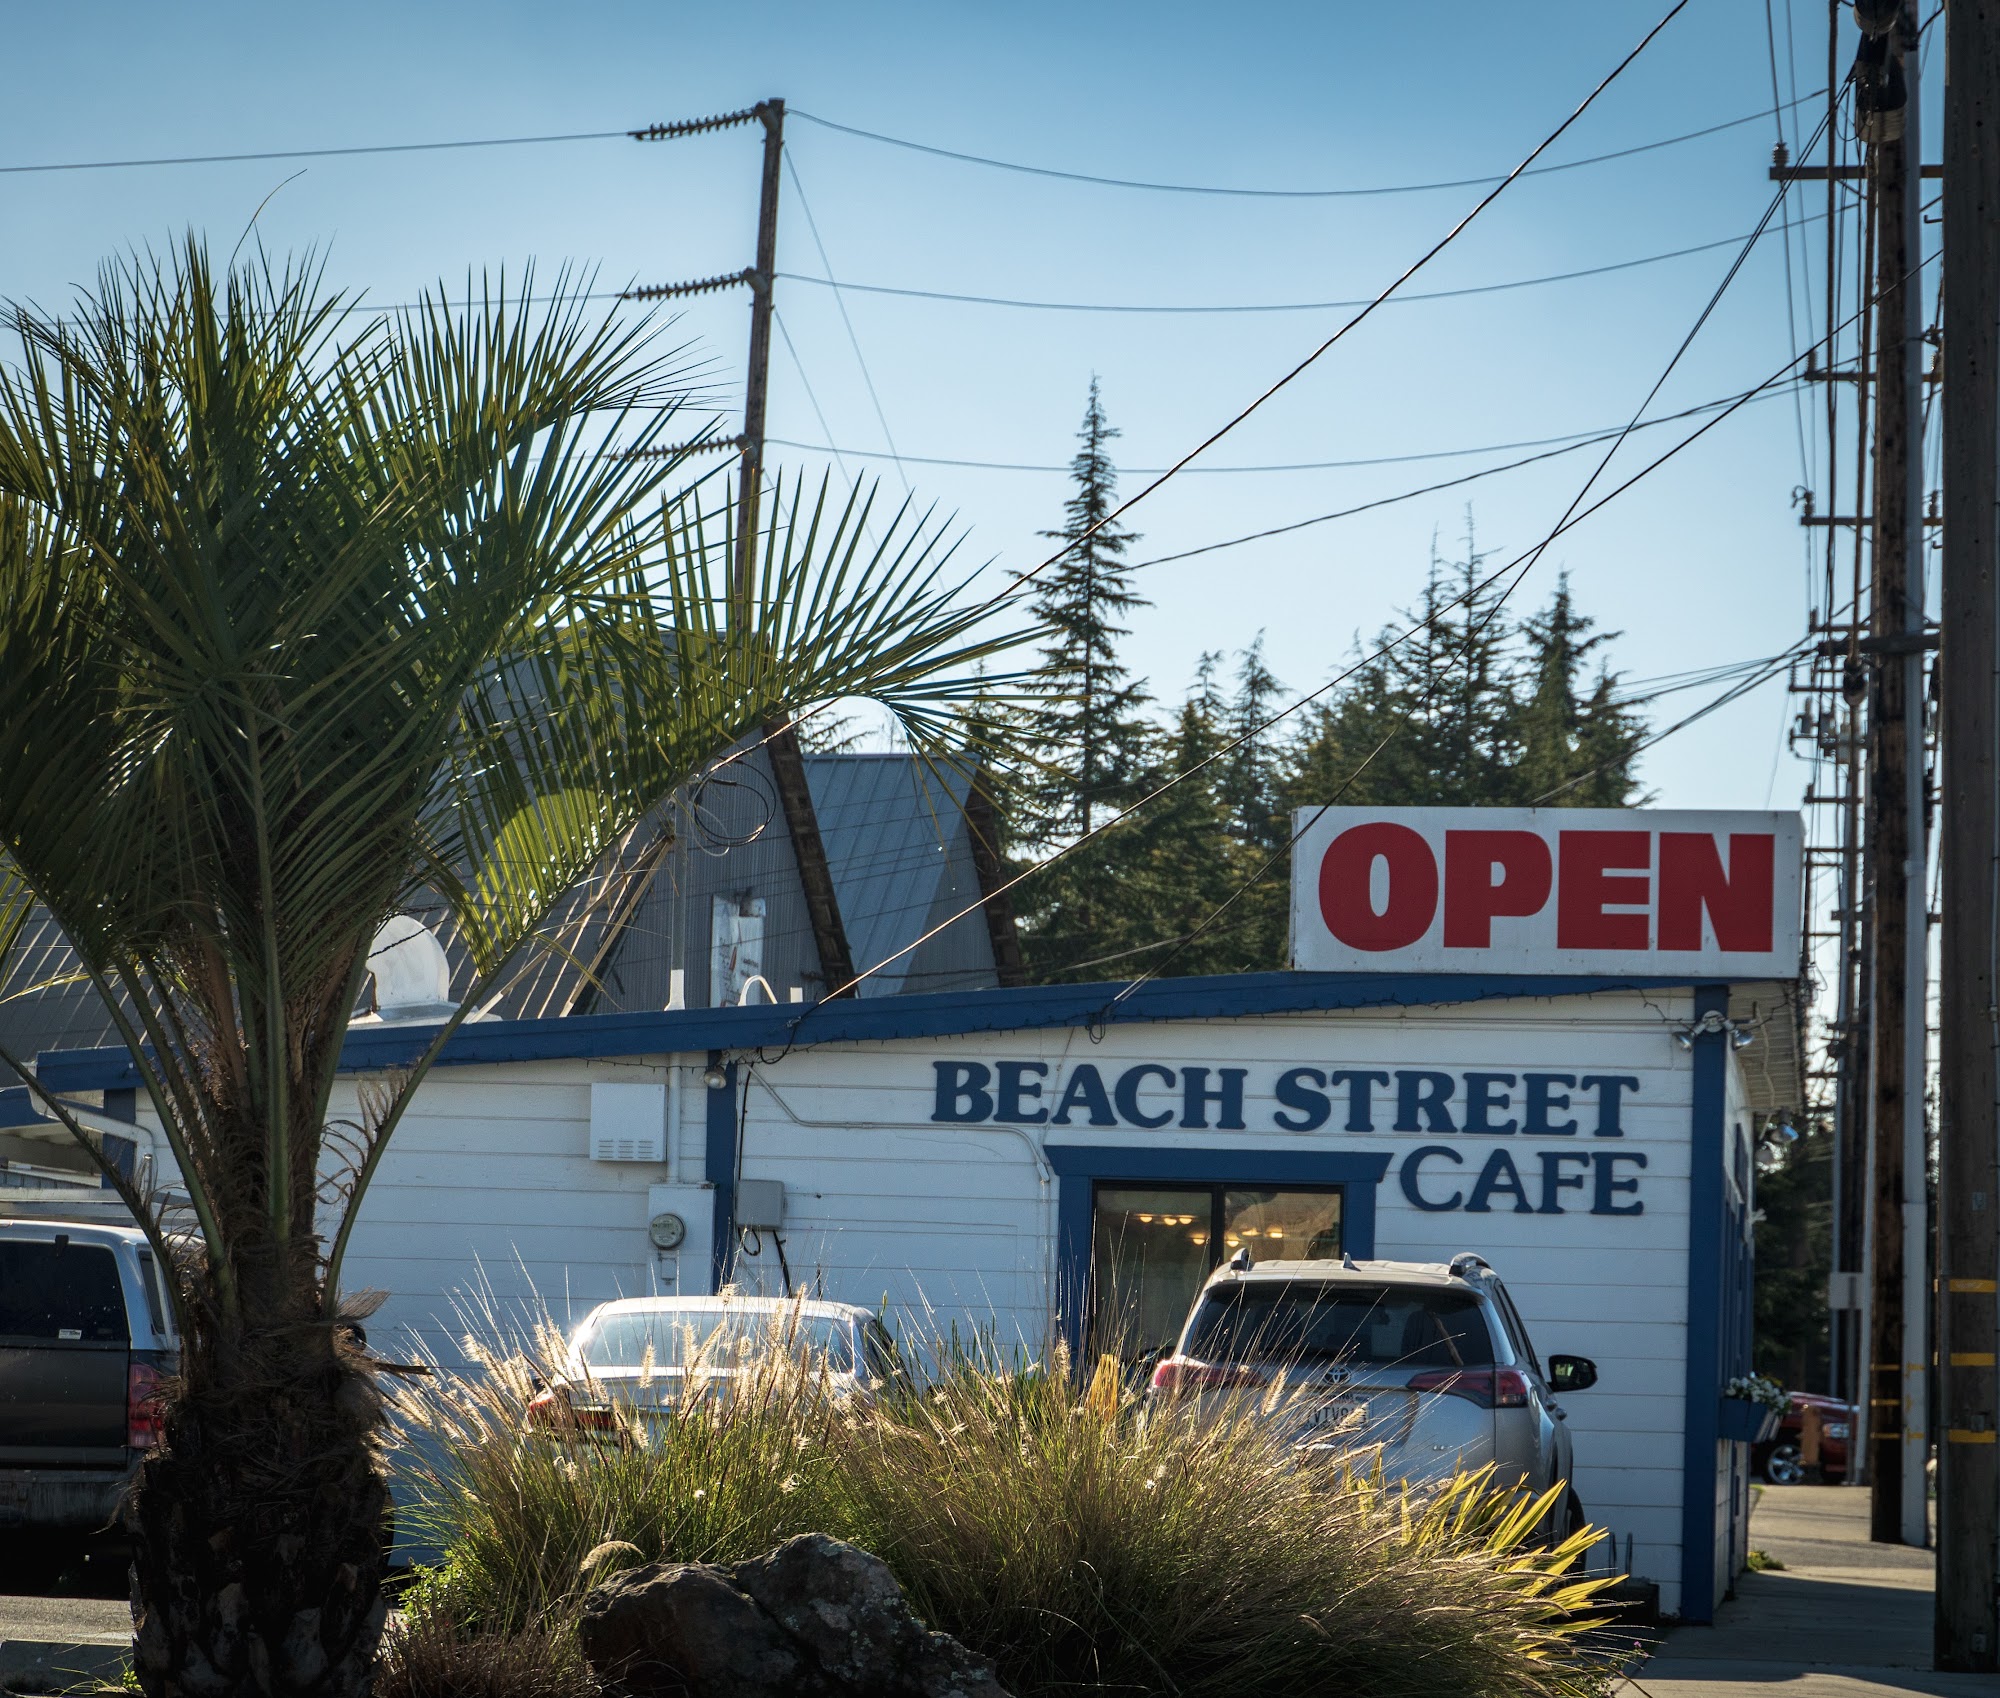 The Beach Street Cafe